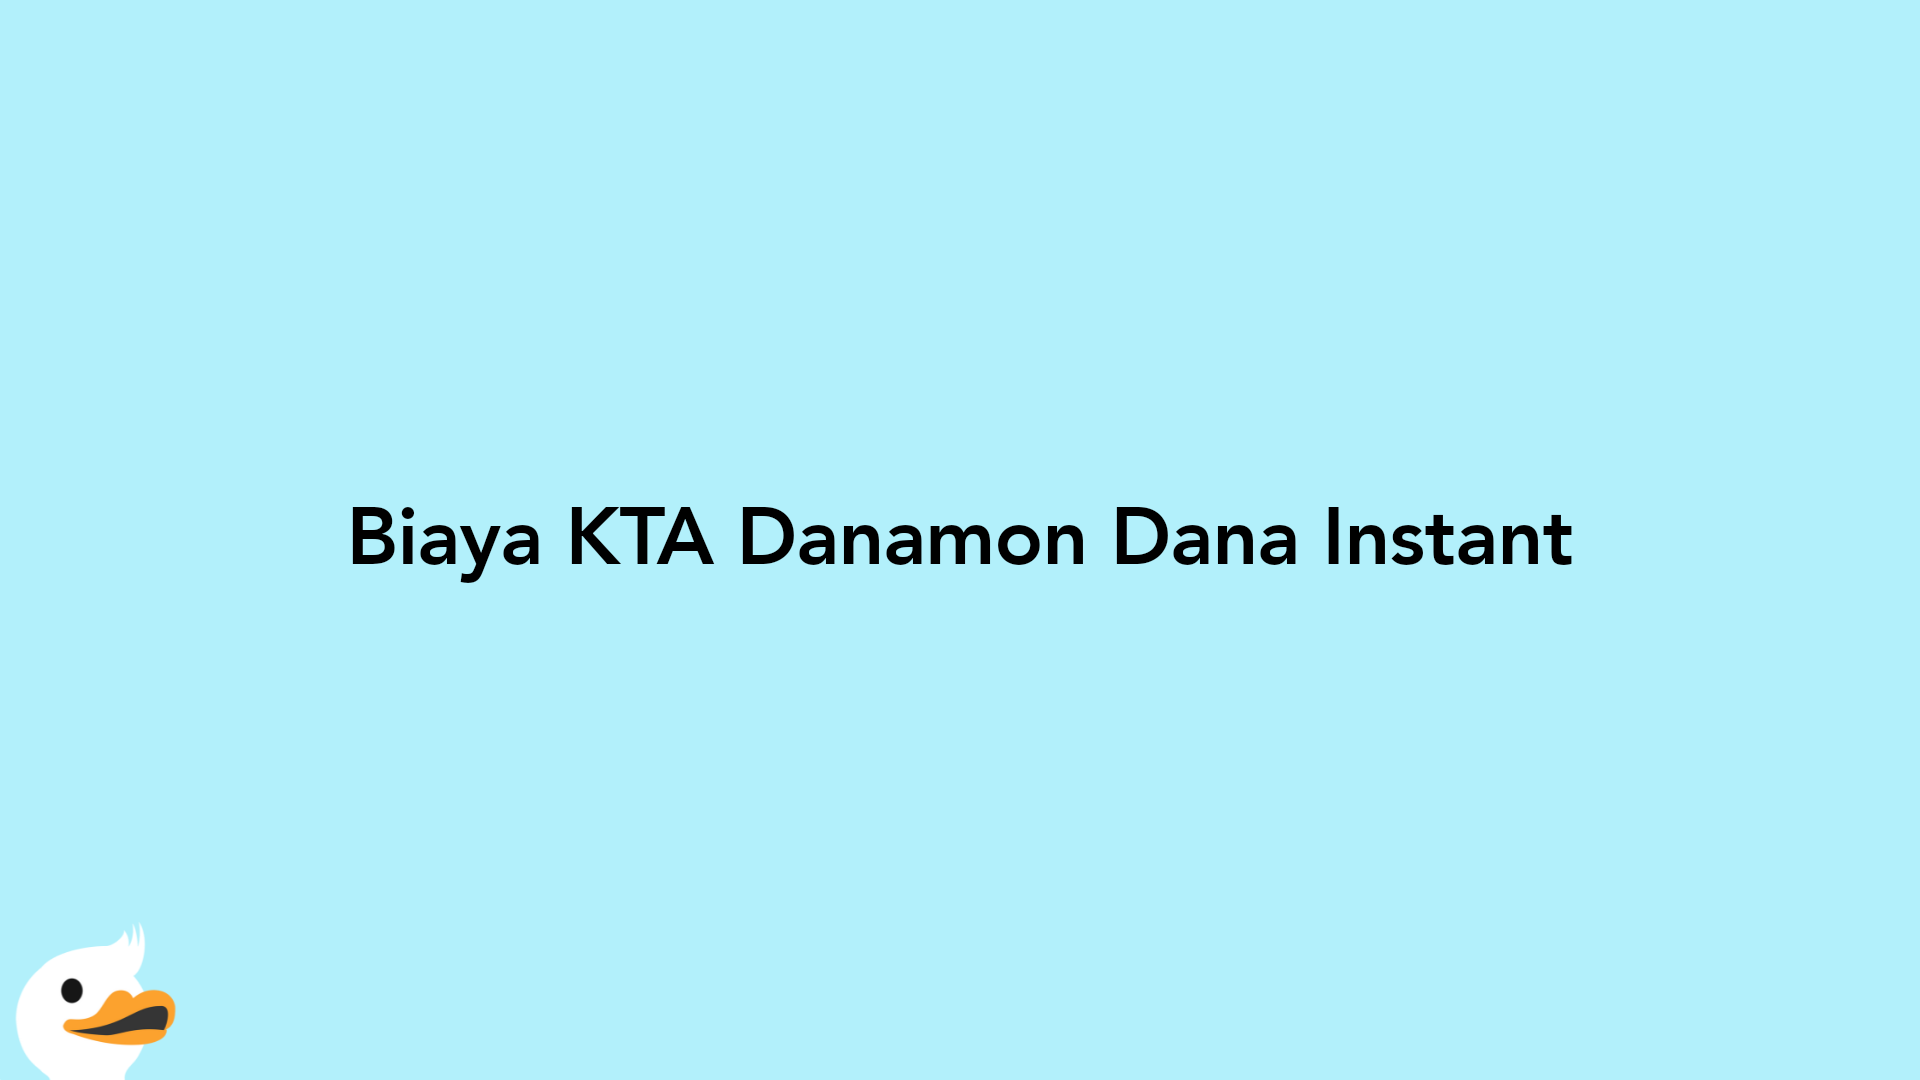 Biaya KTA Danamon Dana Instant